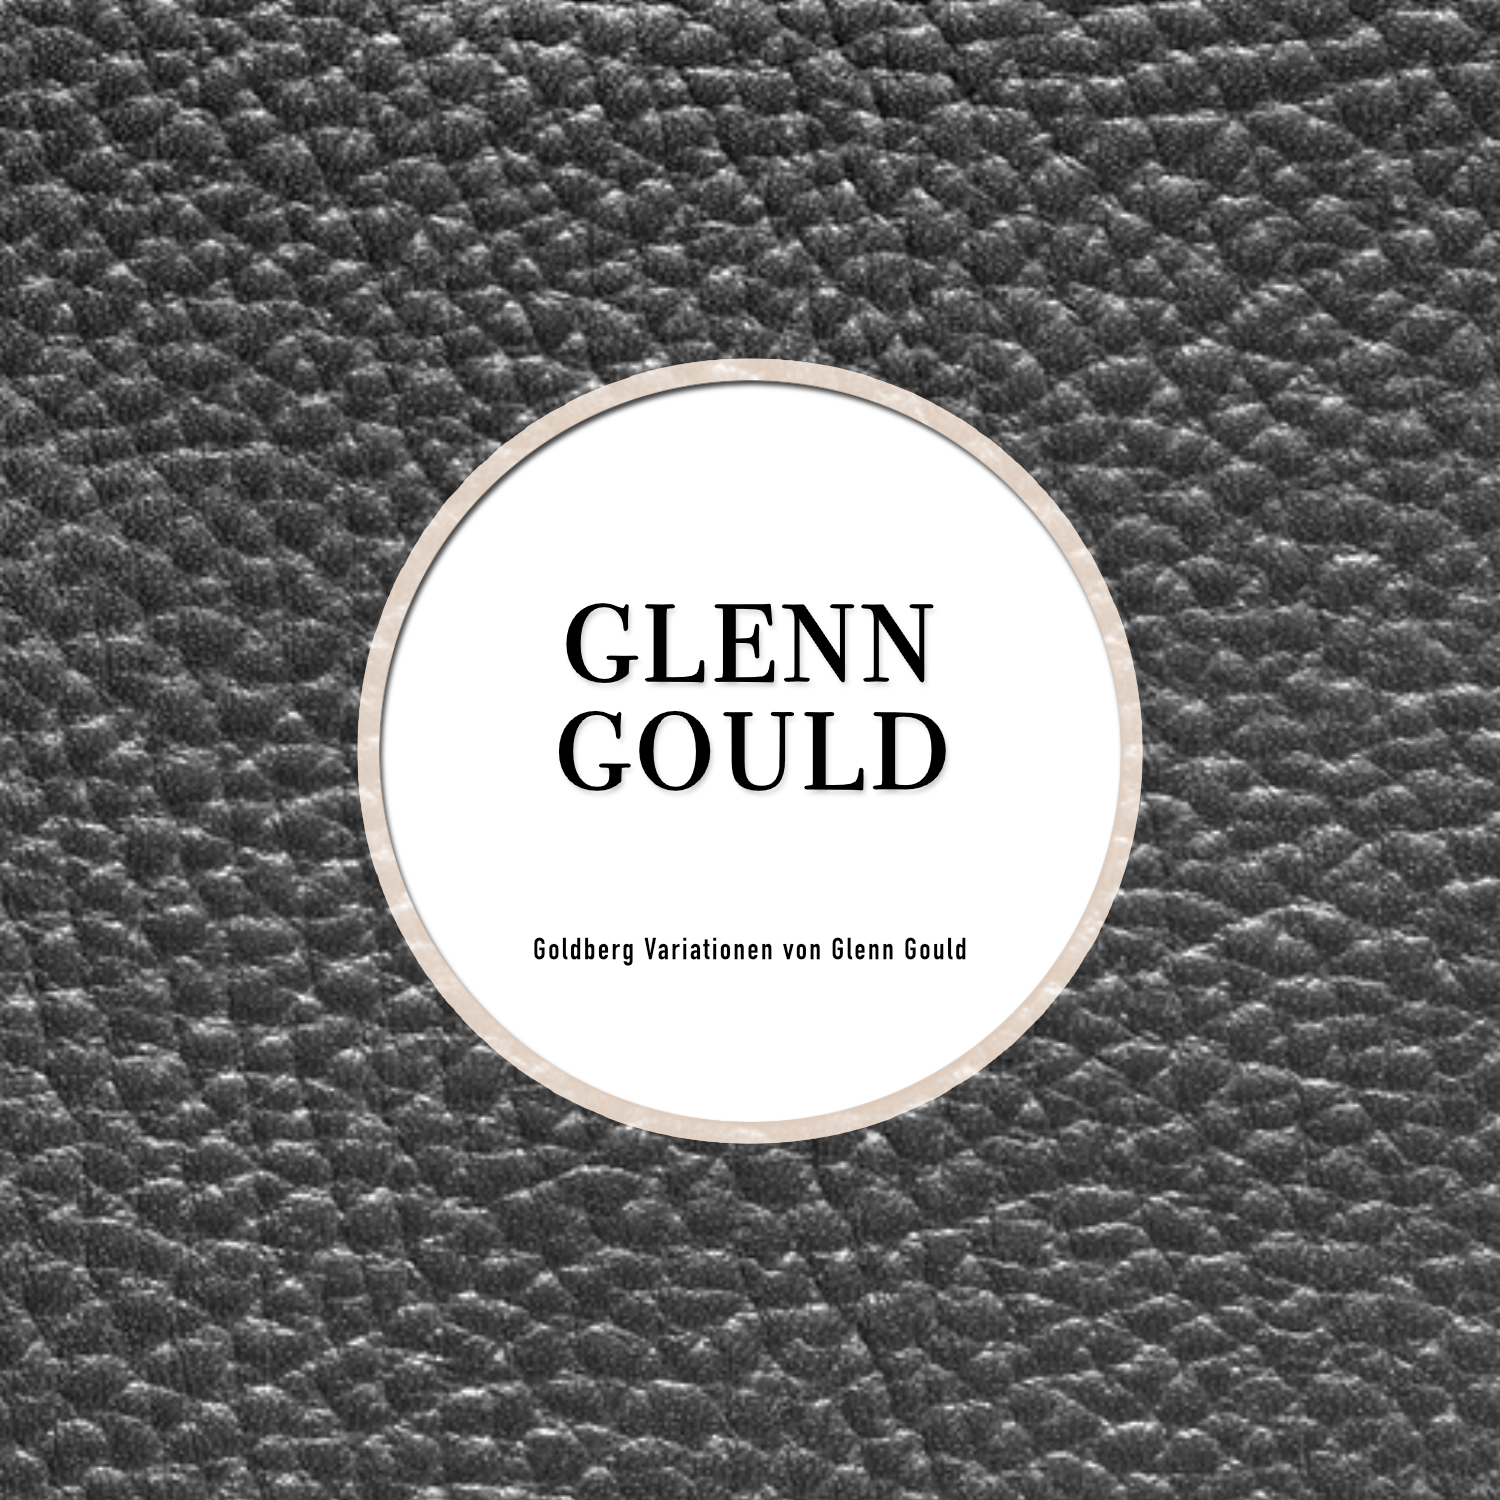 Goldberg Variationen von Glen Gould